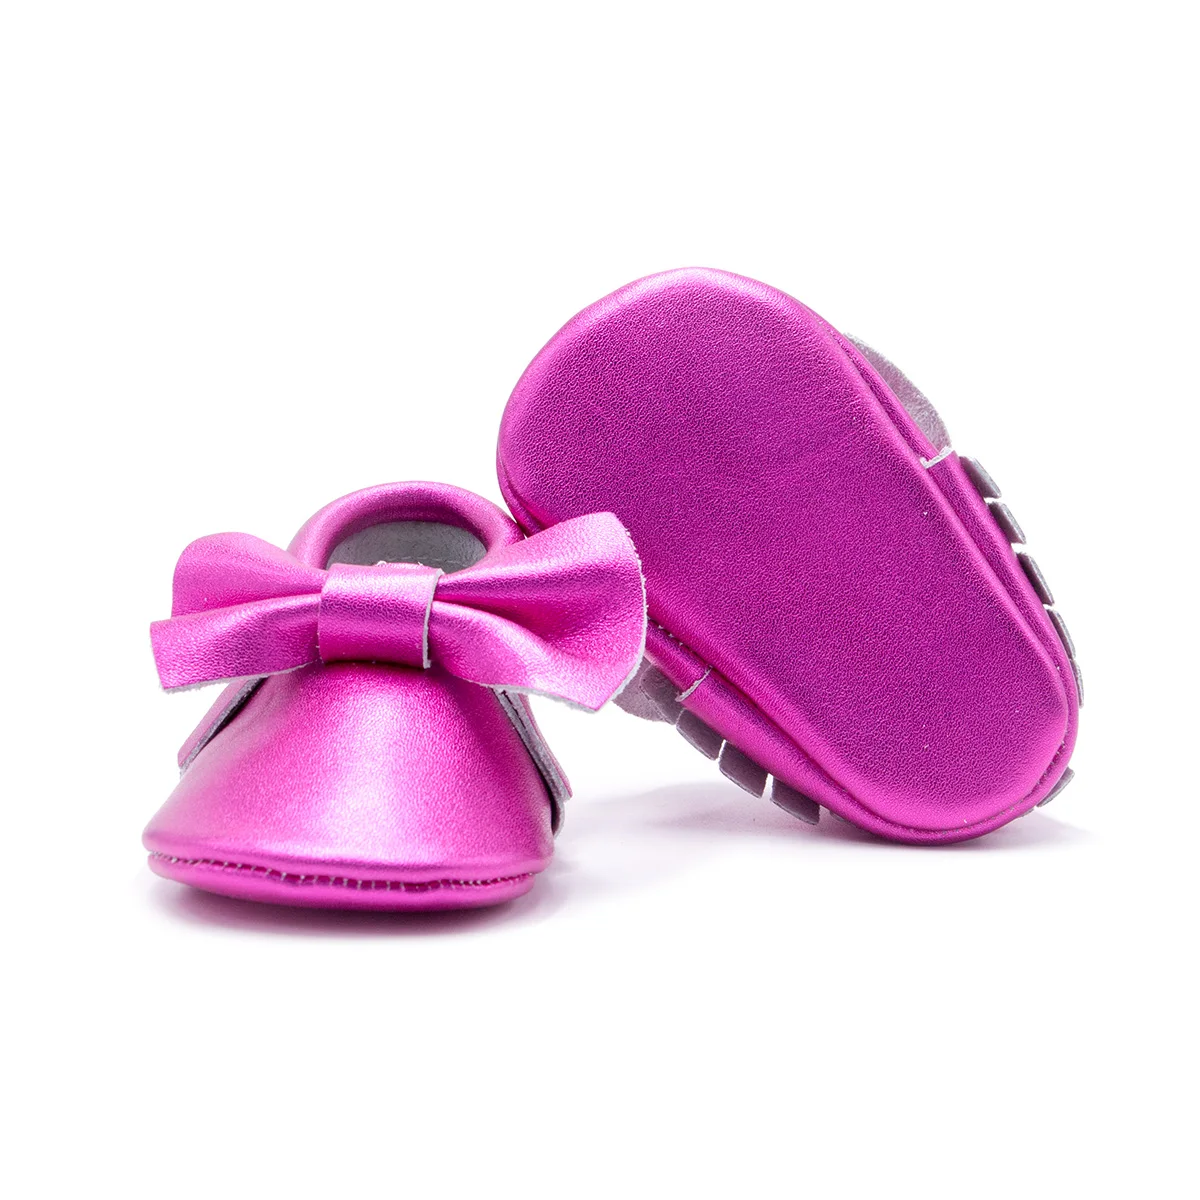 Обувь для девочек Новая Полировочная и розовые туфли из натуральной кожи детские мокасины мягкие цвета розового золота, для тех, кто только